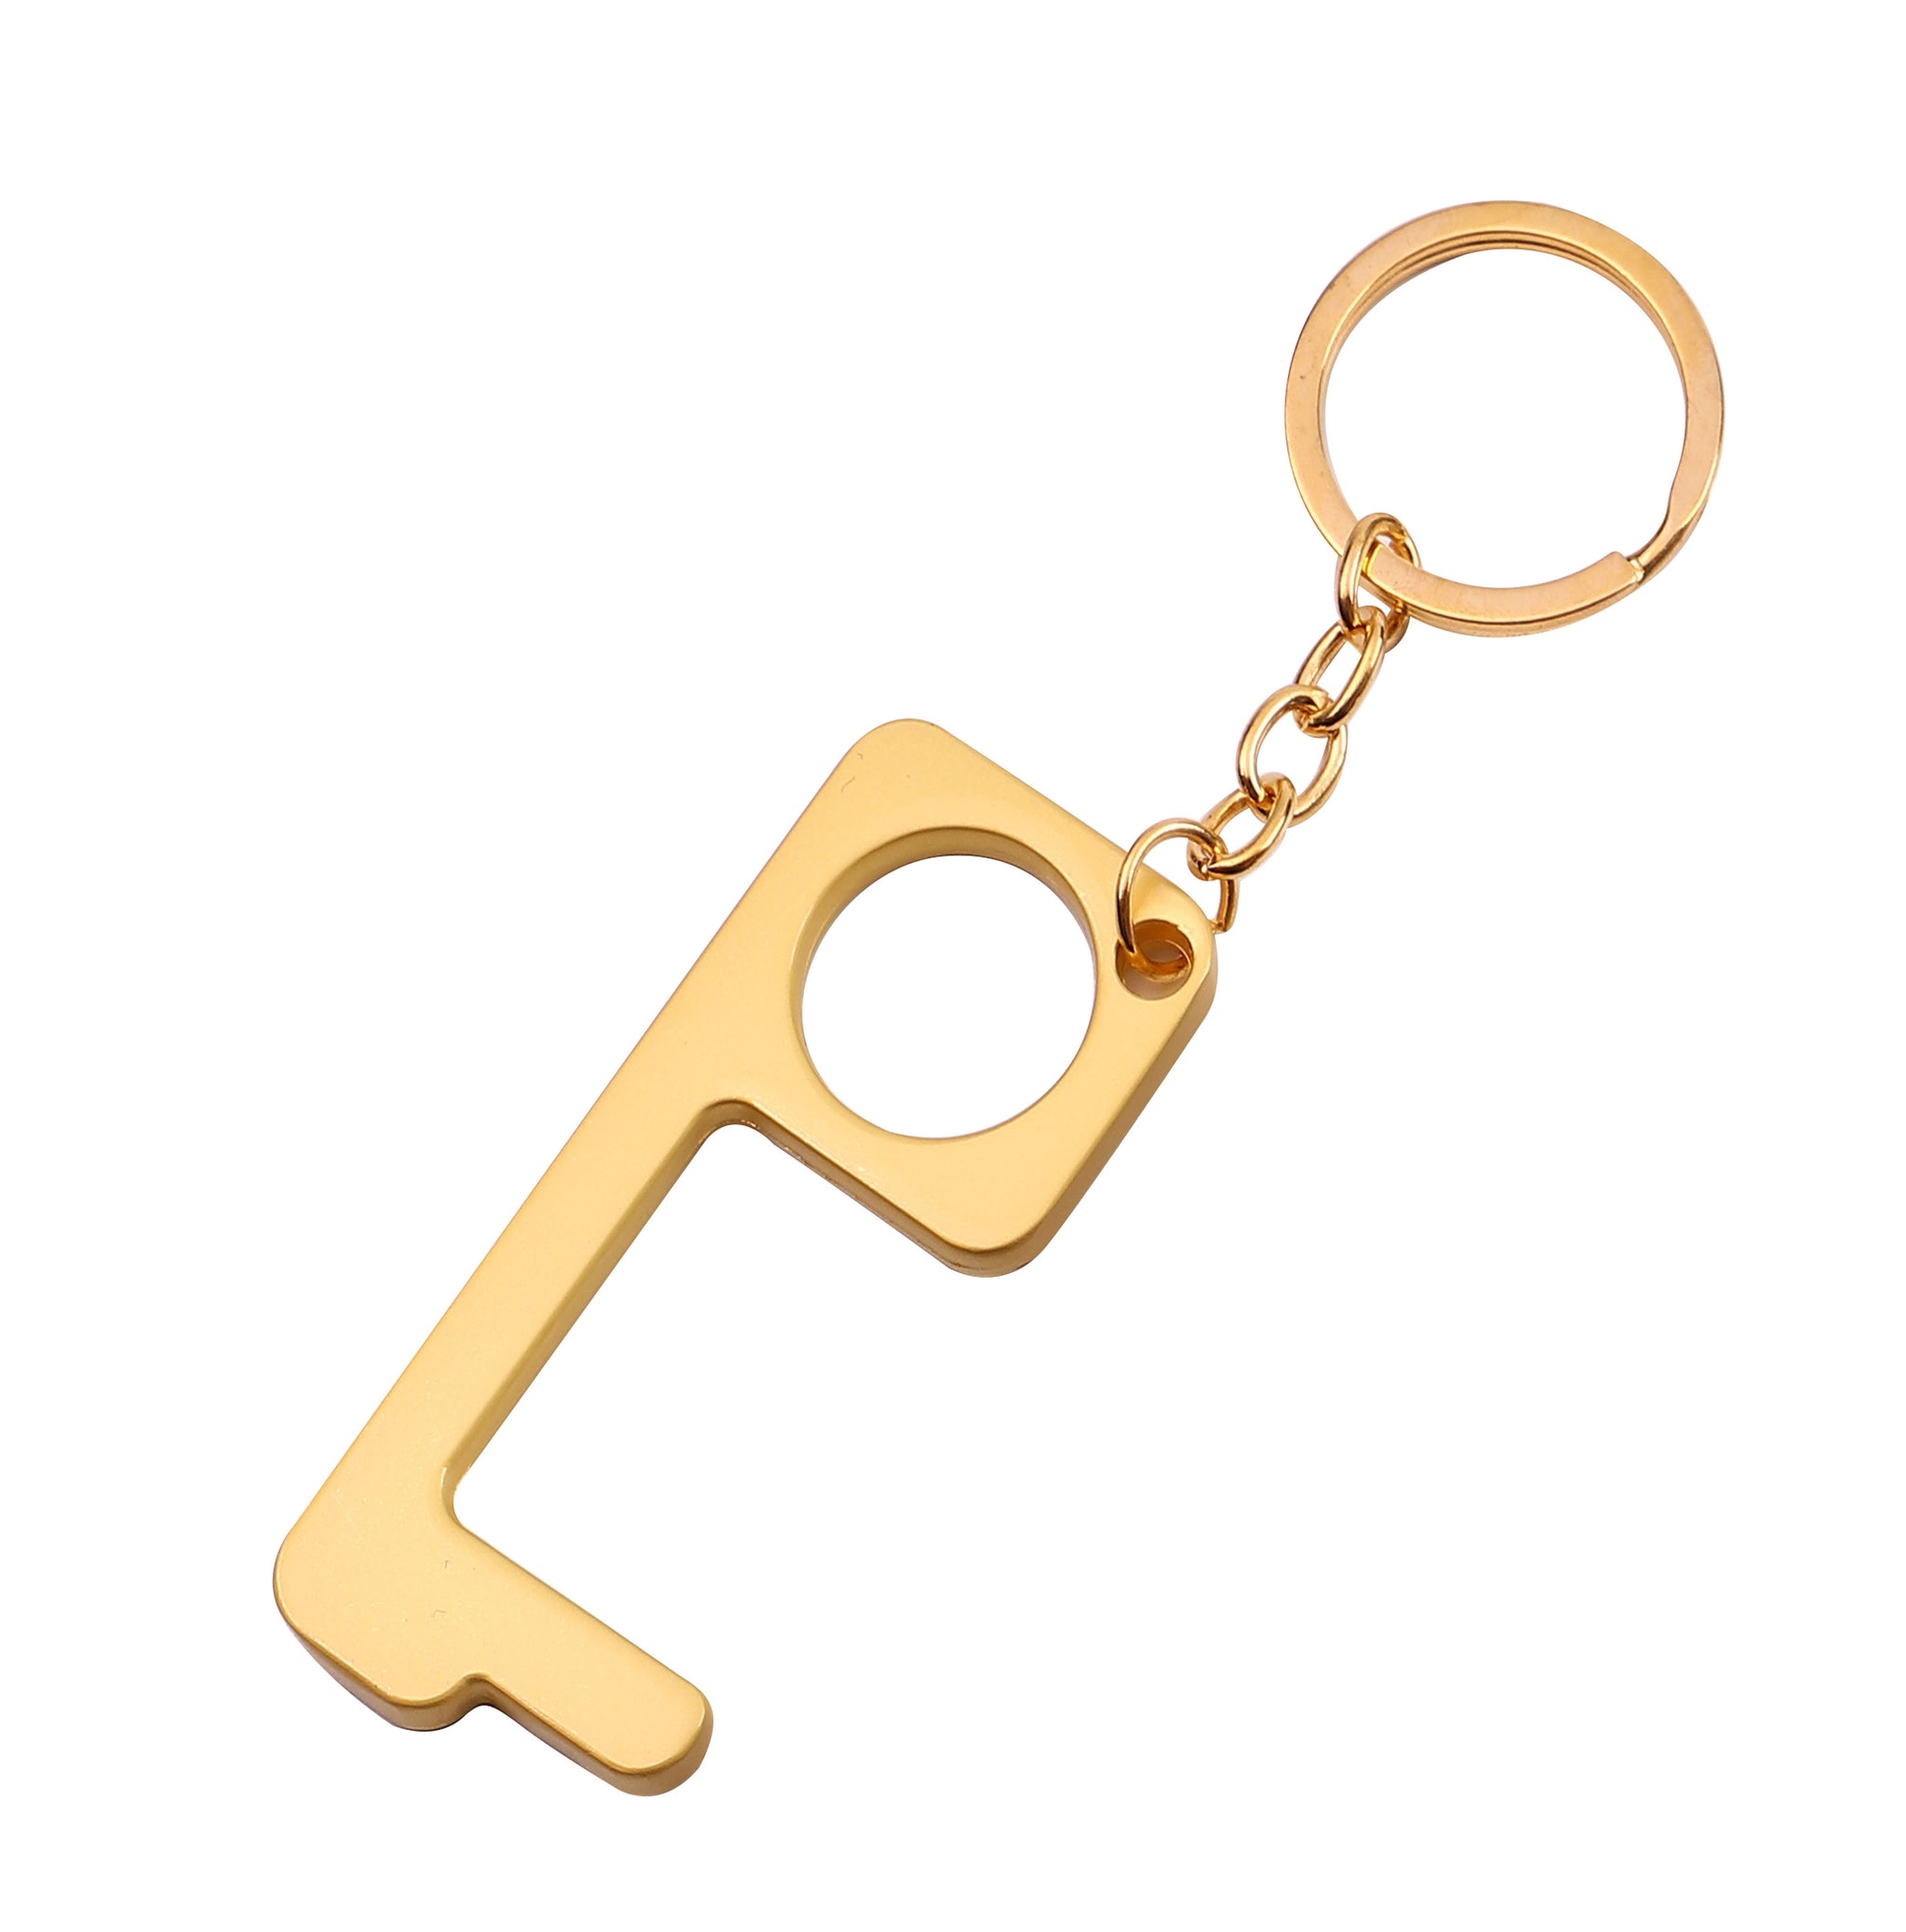 Metal Hands Free Wholesale Key Chain & Door Opener - 4 colors